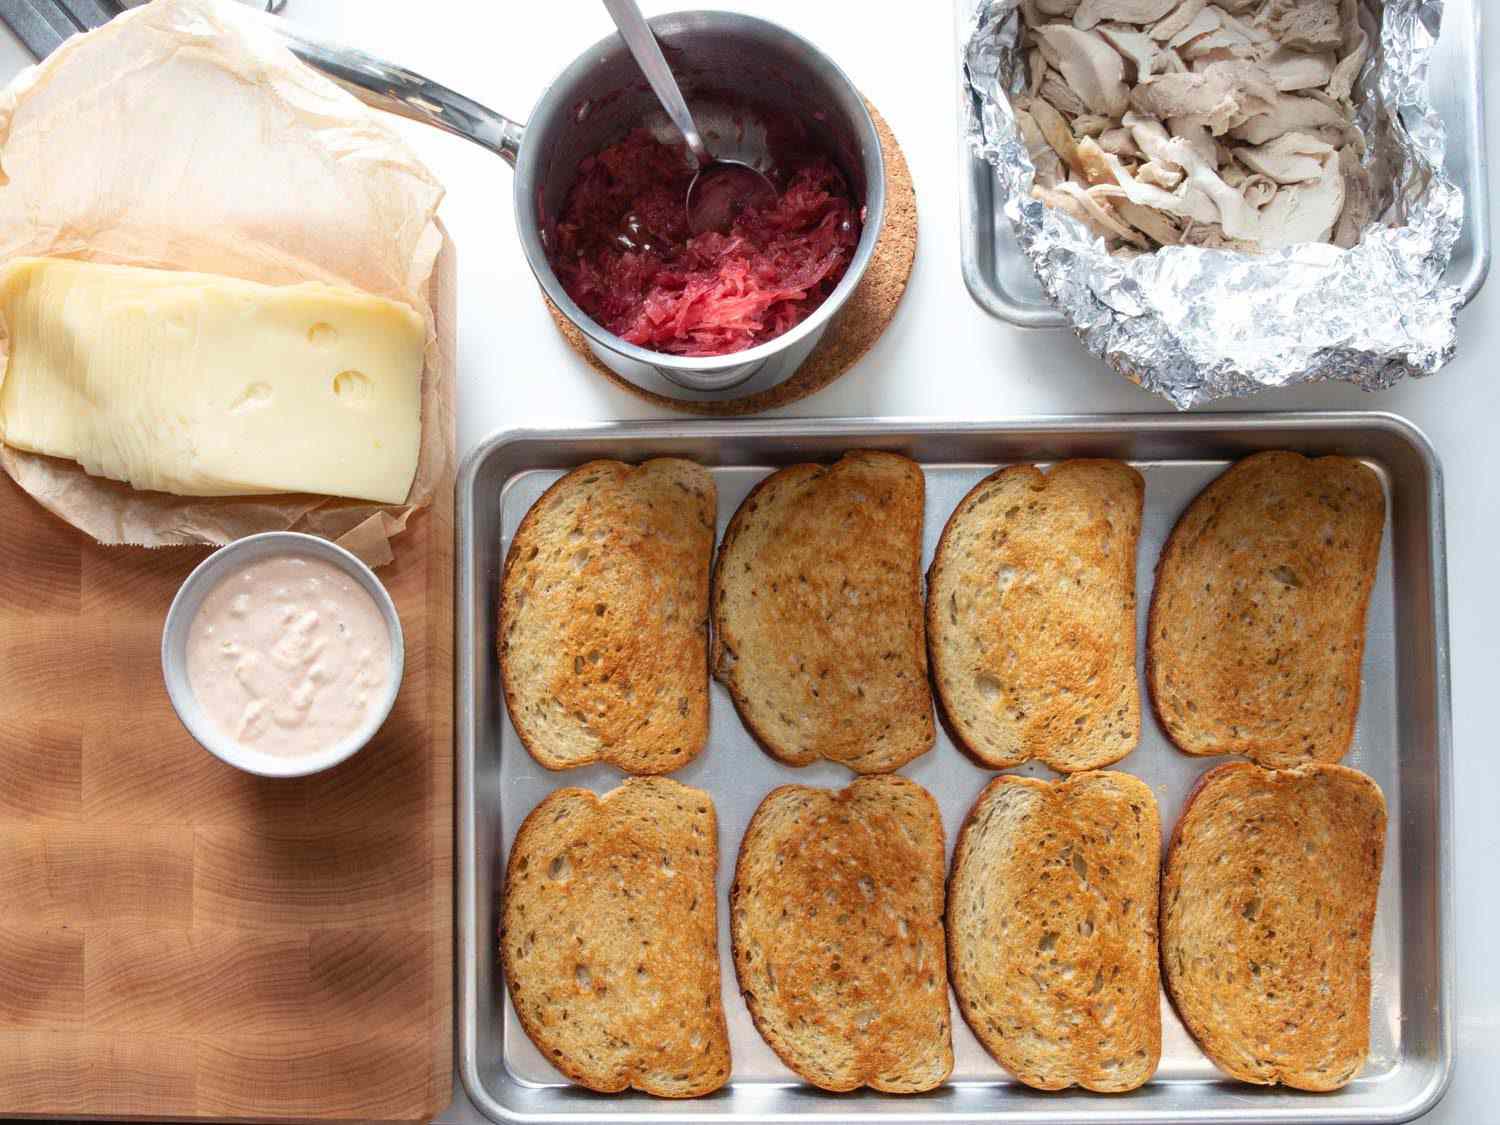 火鸡鲁本三明治的配料开销:烤黑麦面包、吃剩的烤火鸡、蔓越莓酸菜、俄罗斯调味品和瑞士奶酪。